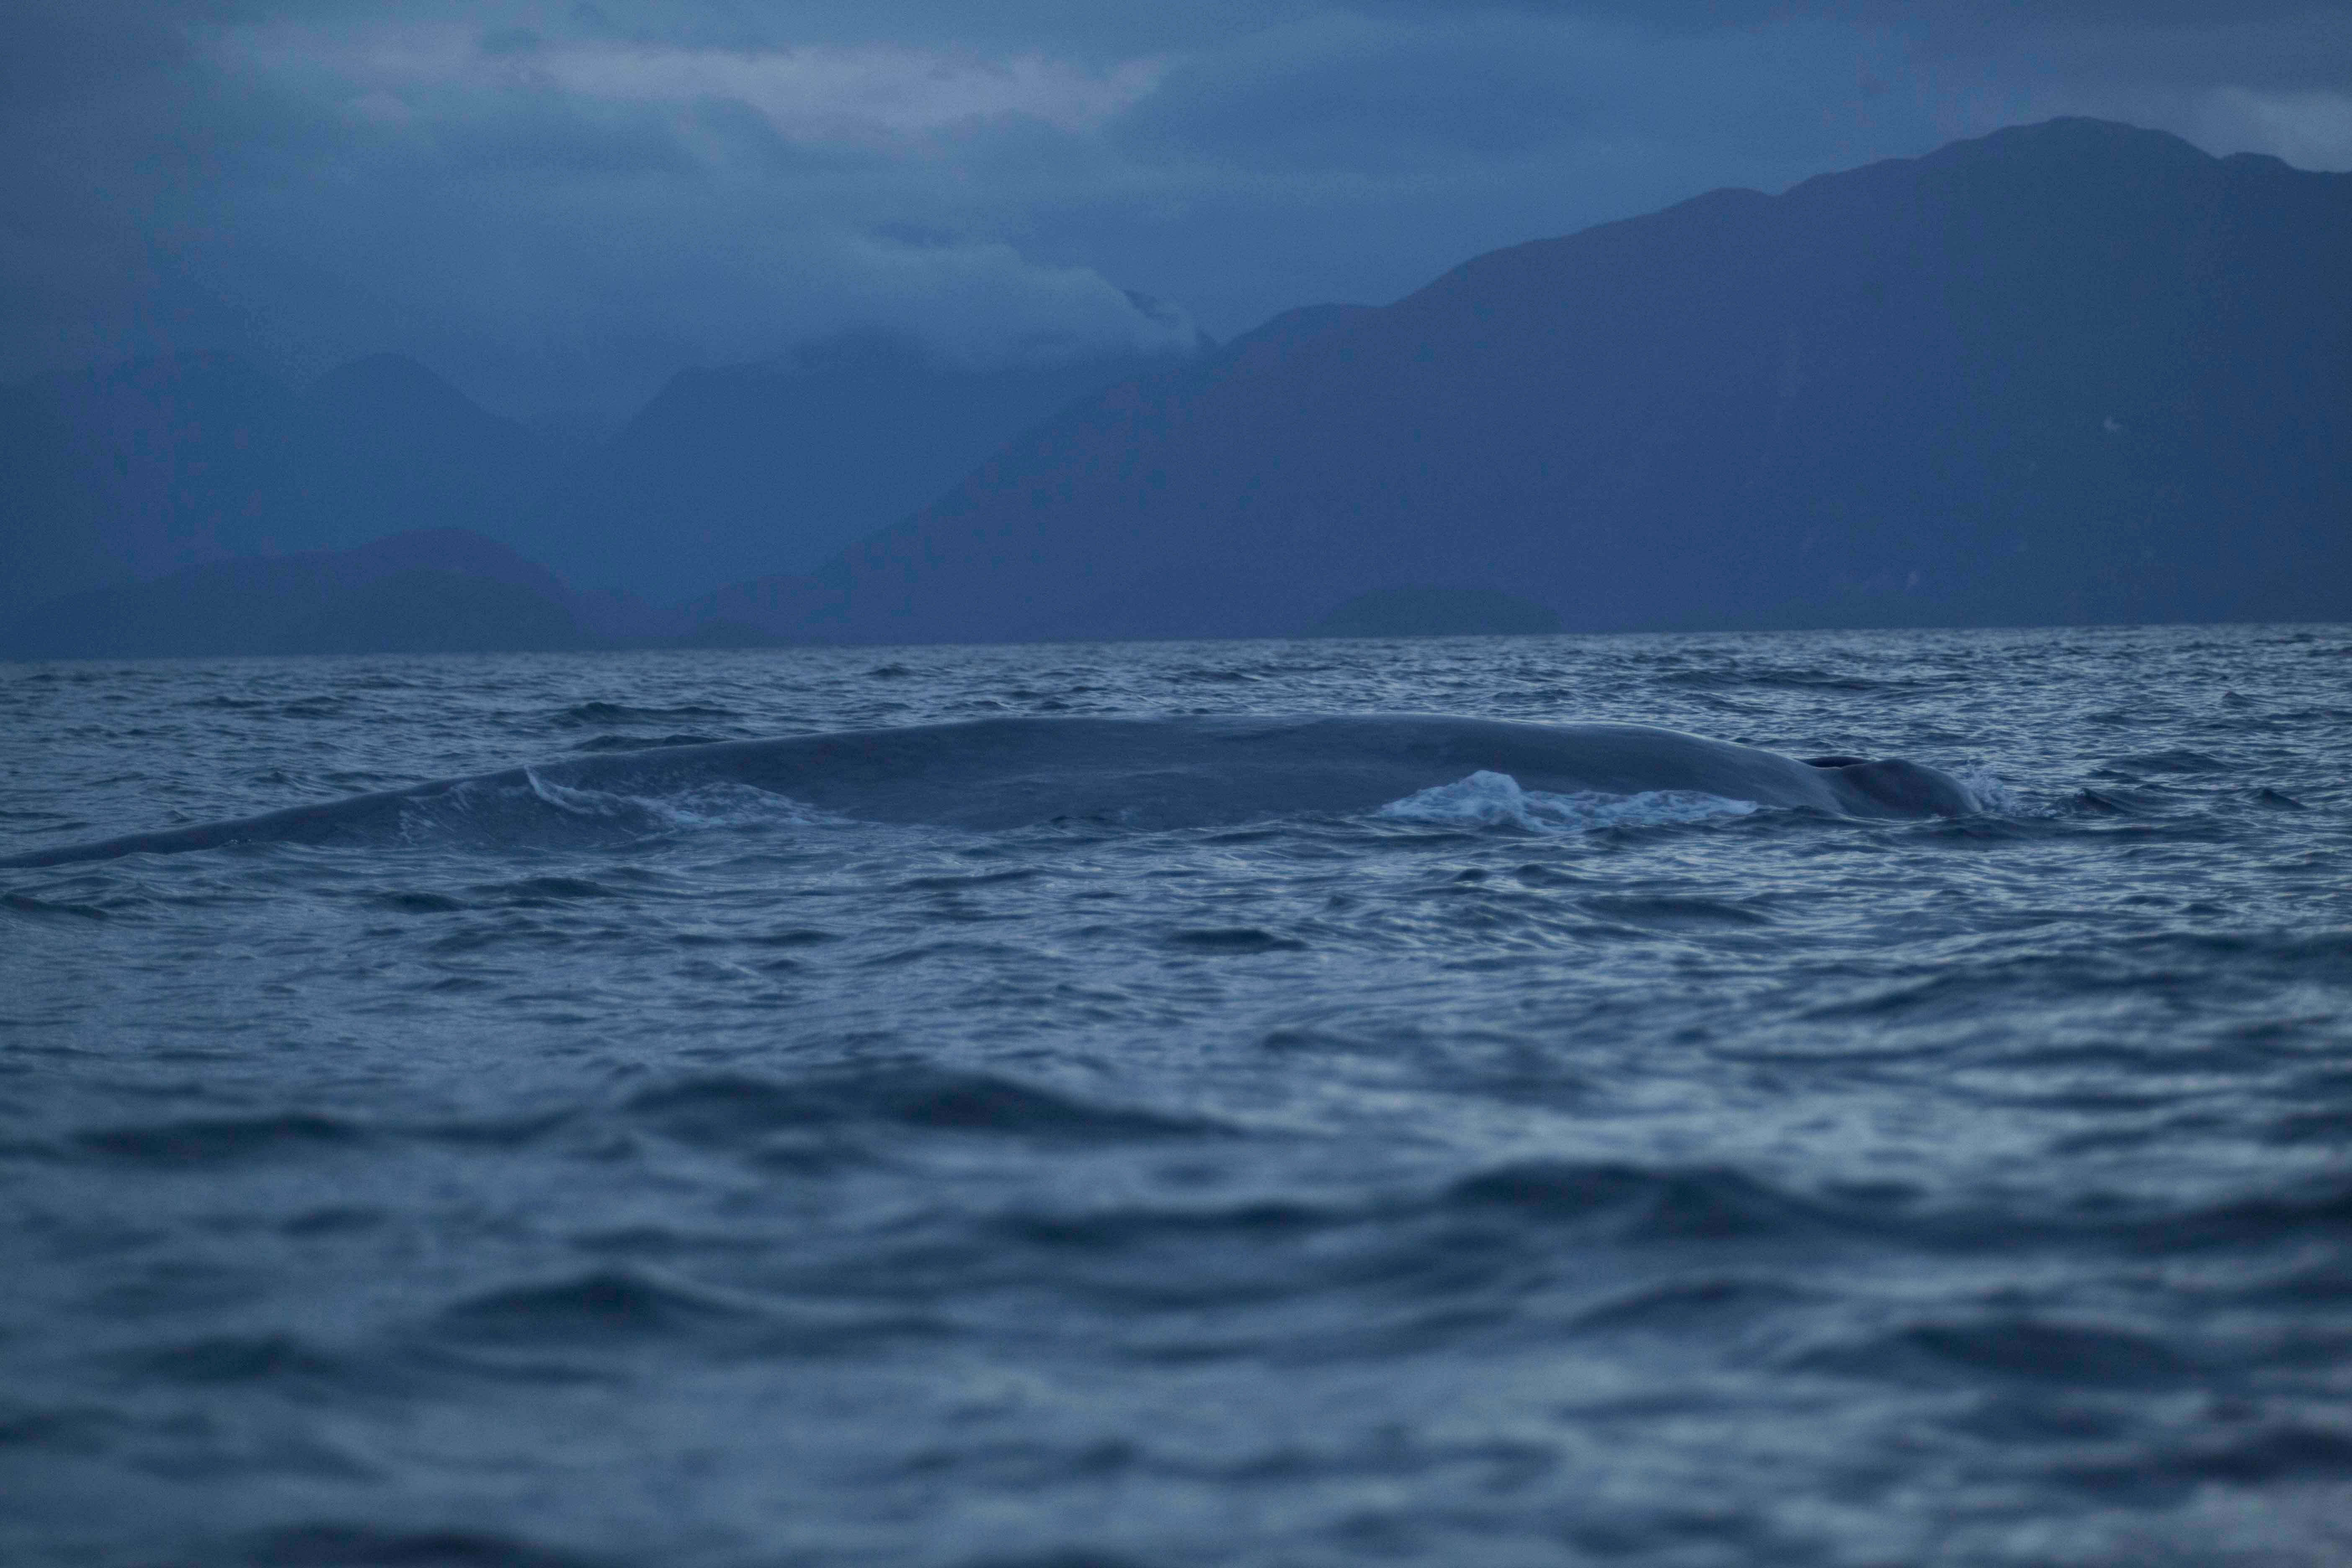 La majestuosa ballena azul surcando los mares australes © Daniel Casado